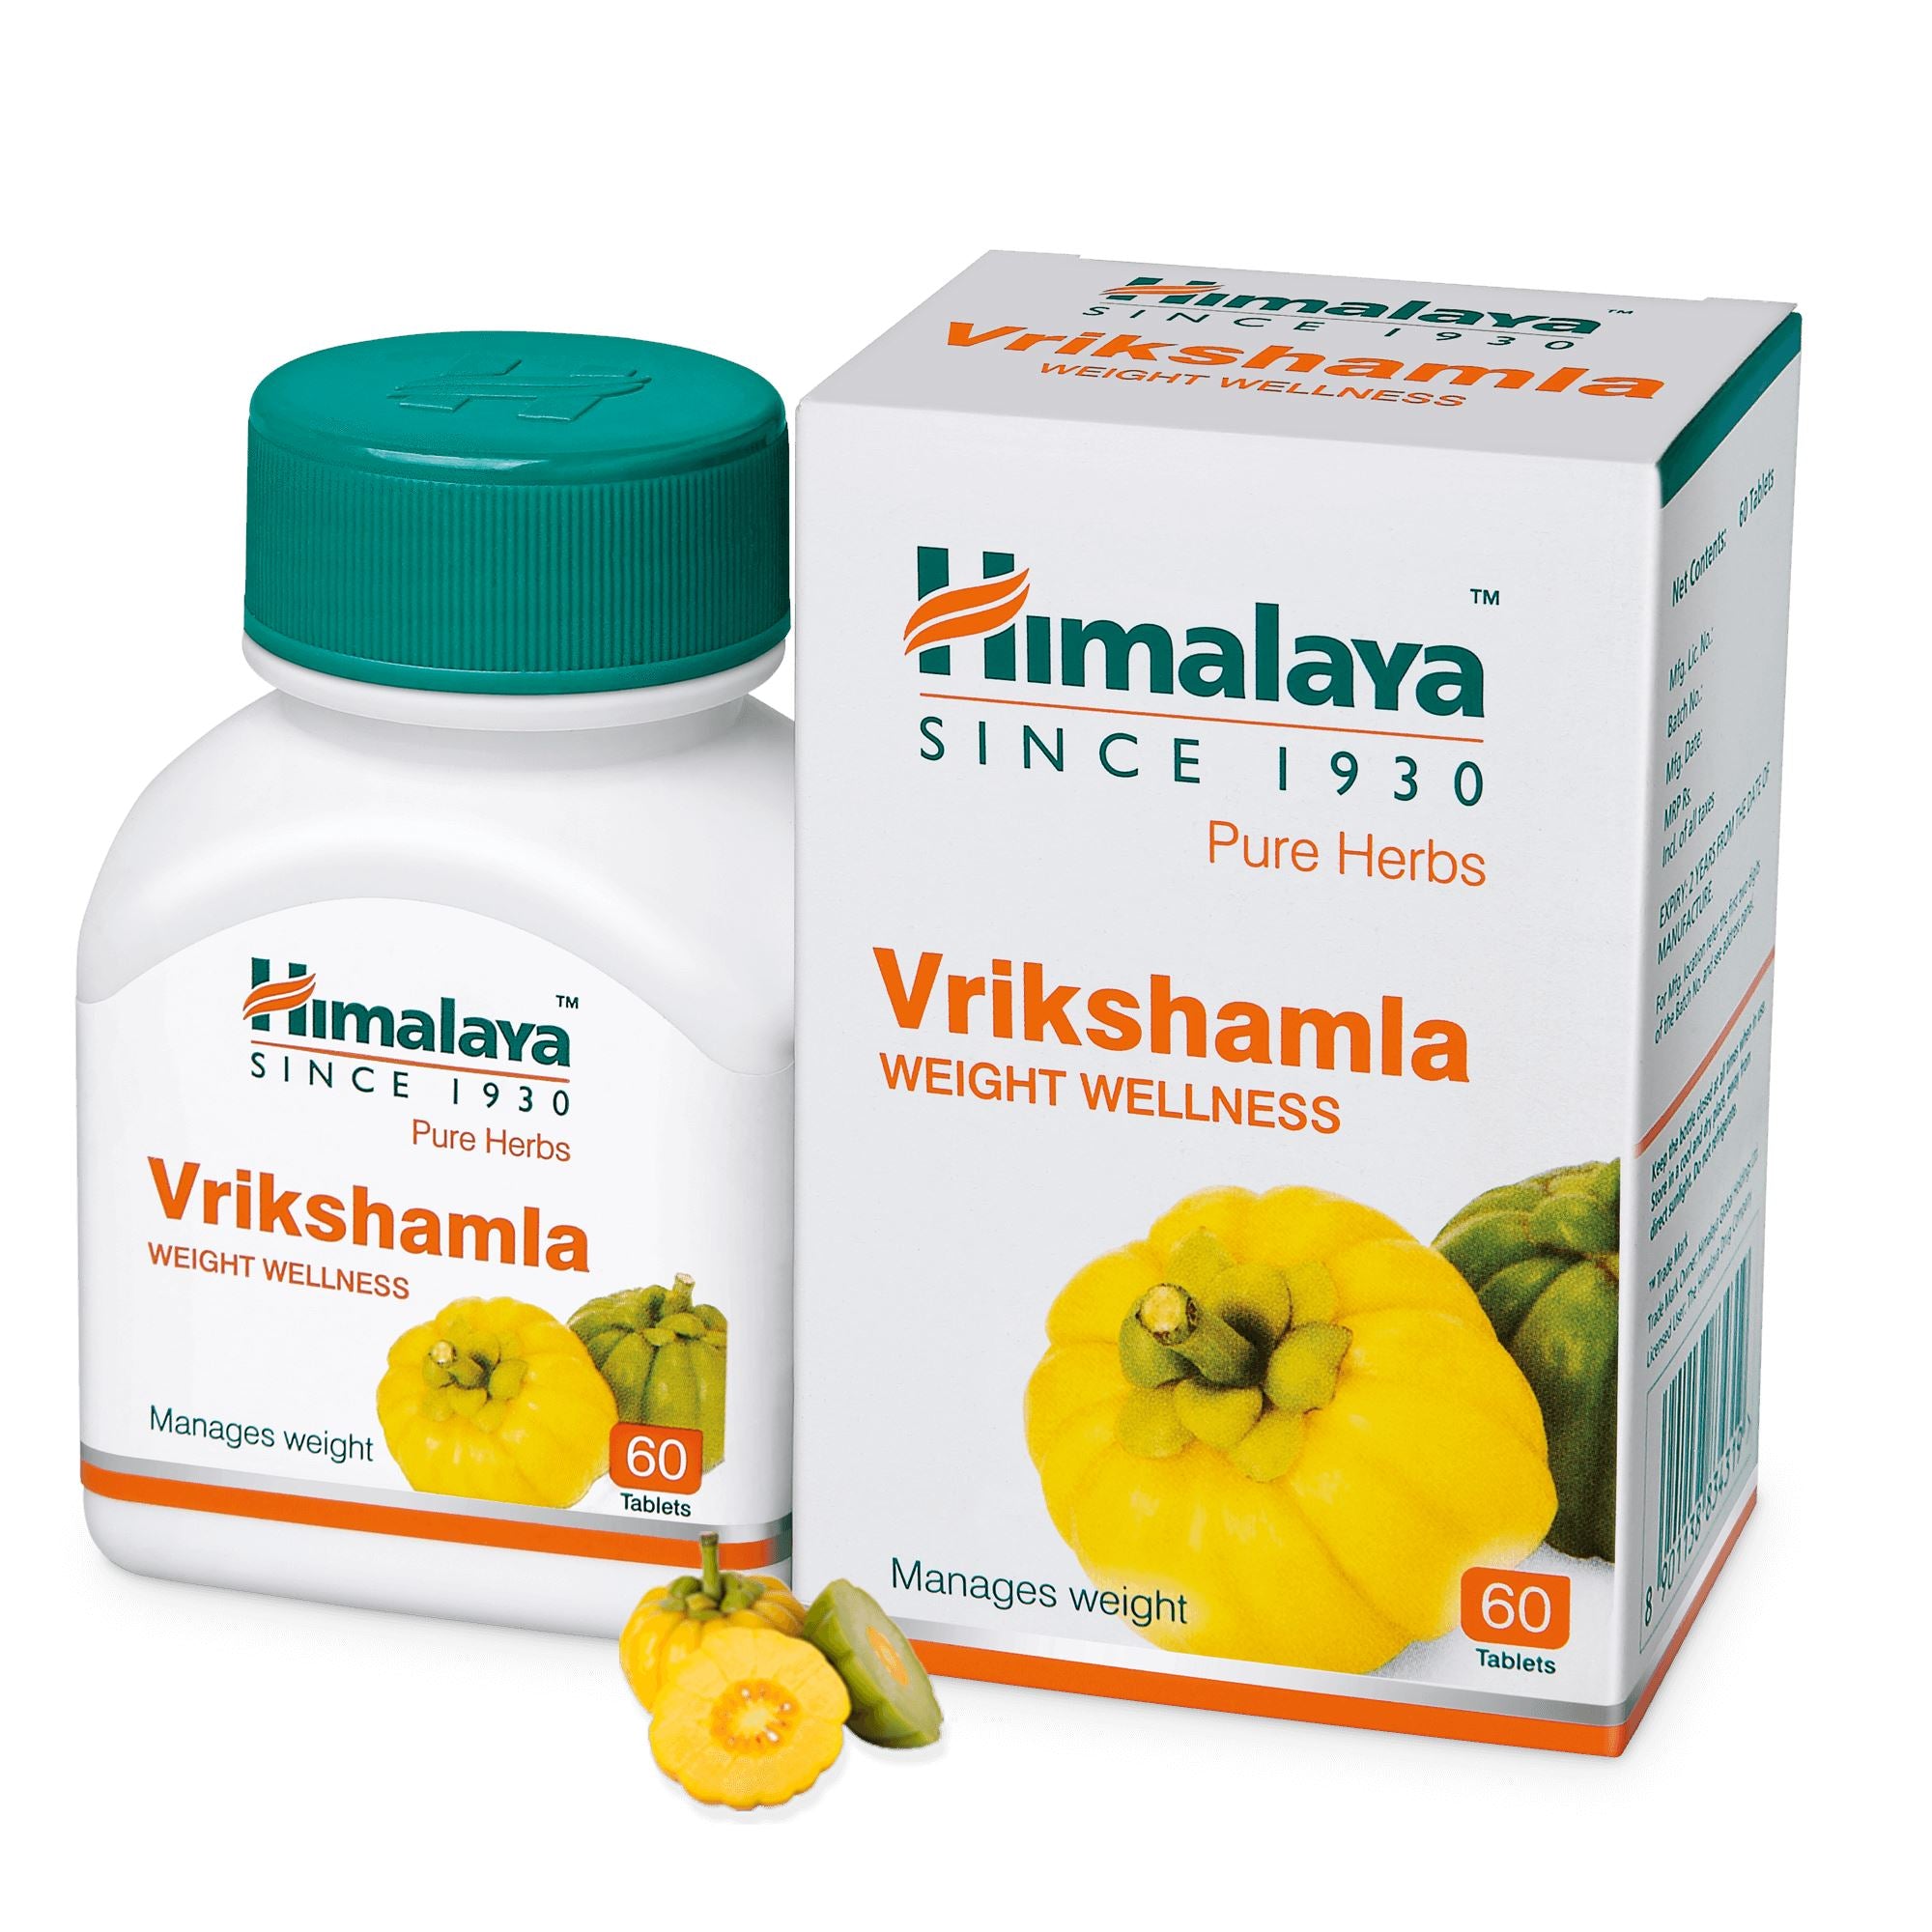 Himalaya Vrikshamla - Manages weight